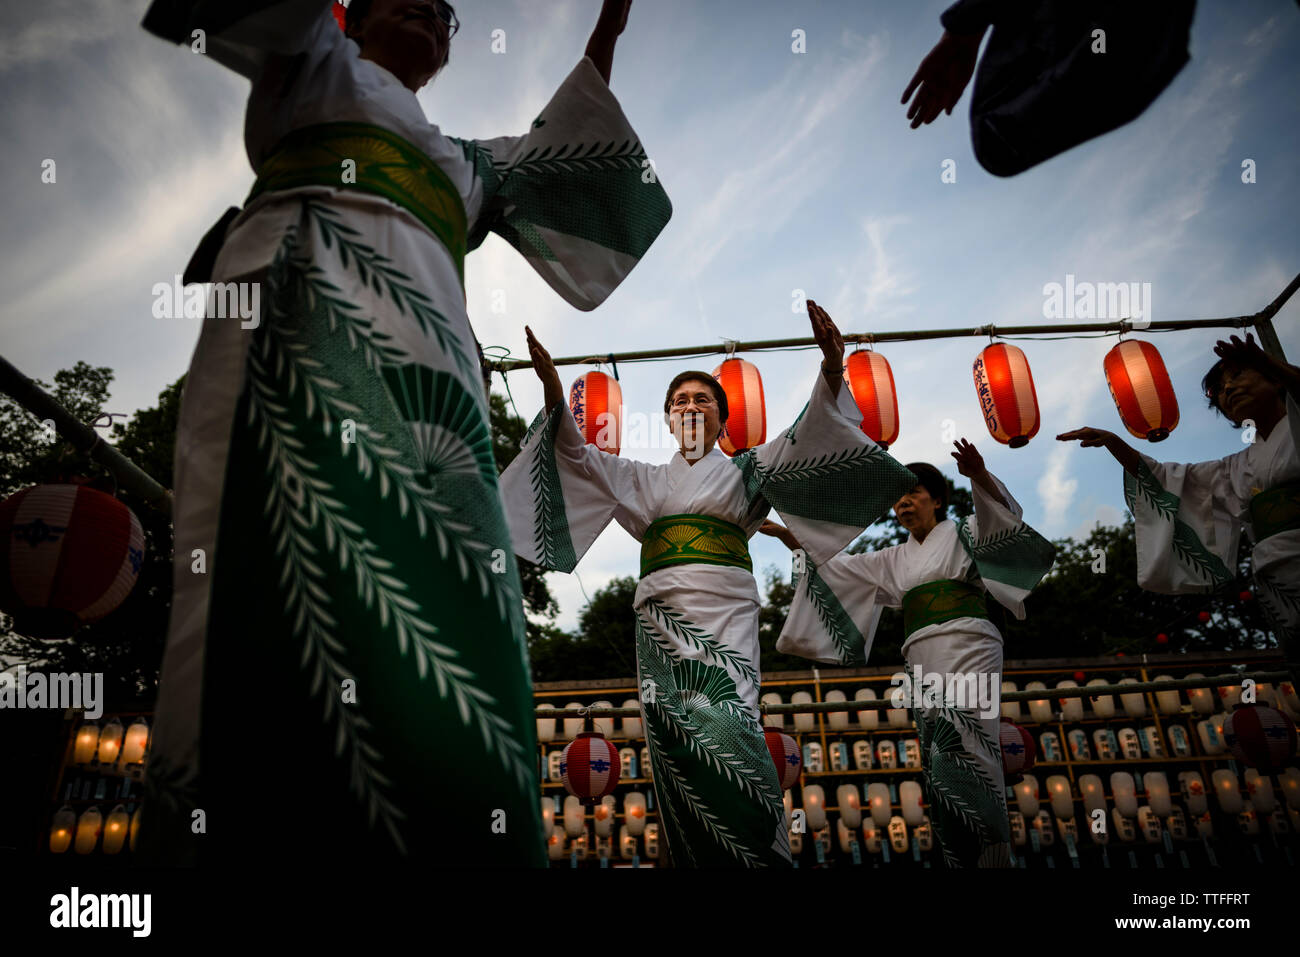 Ángulo de visión baja de mujeres bailando durante la fiesta tradicional en Obón Foto de stock